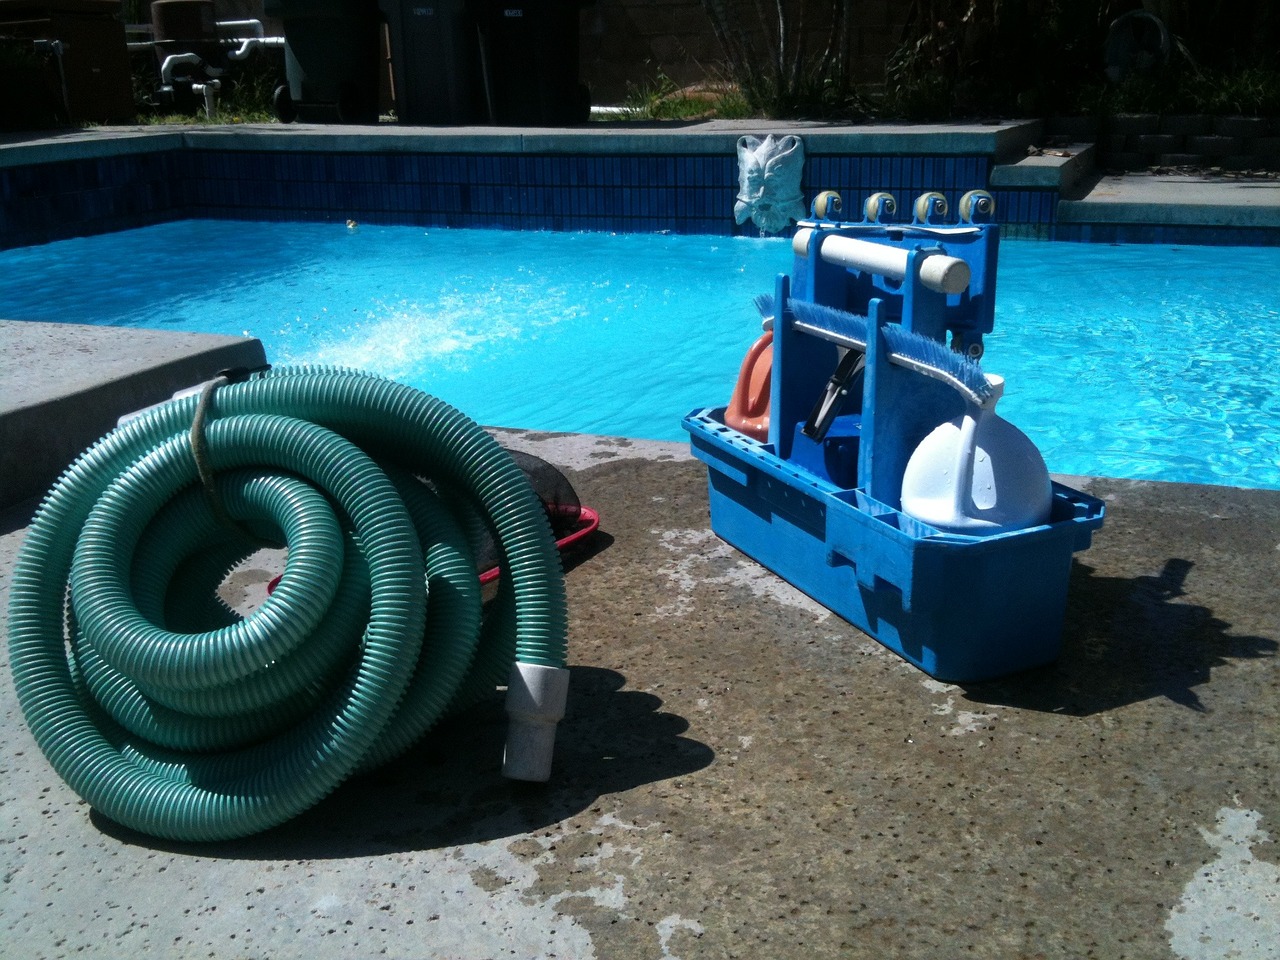 aparatos de mantenimiento de piscina